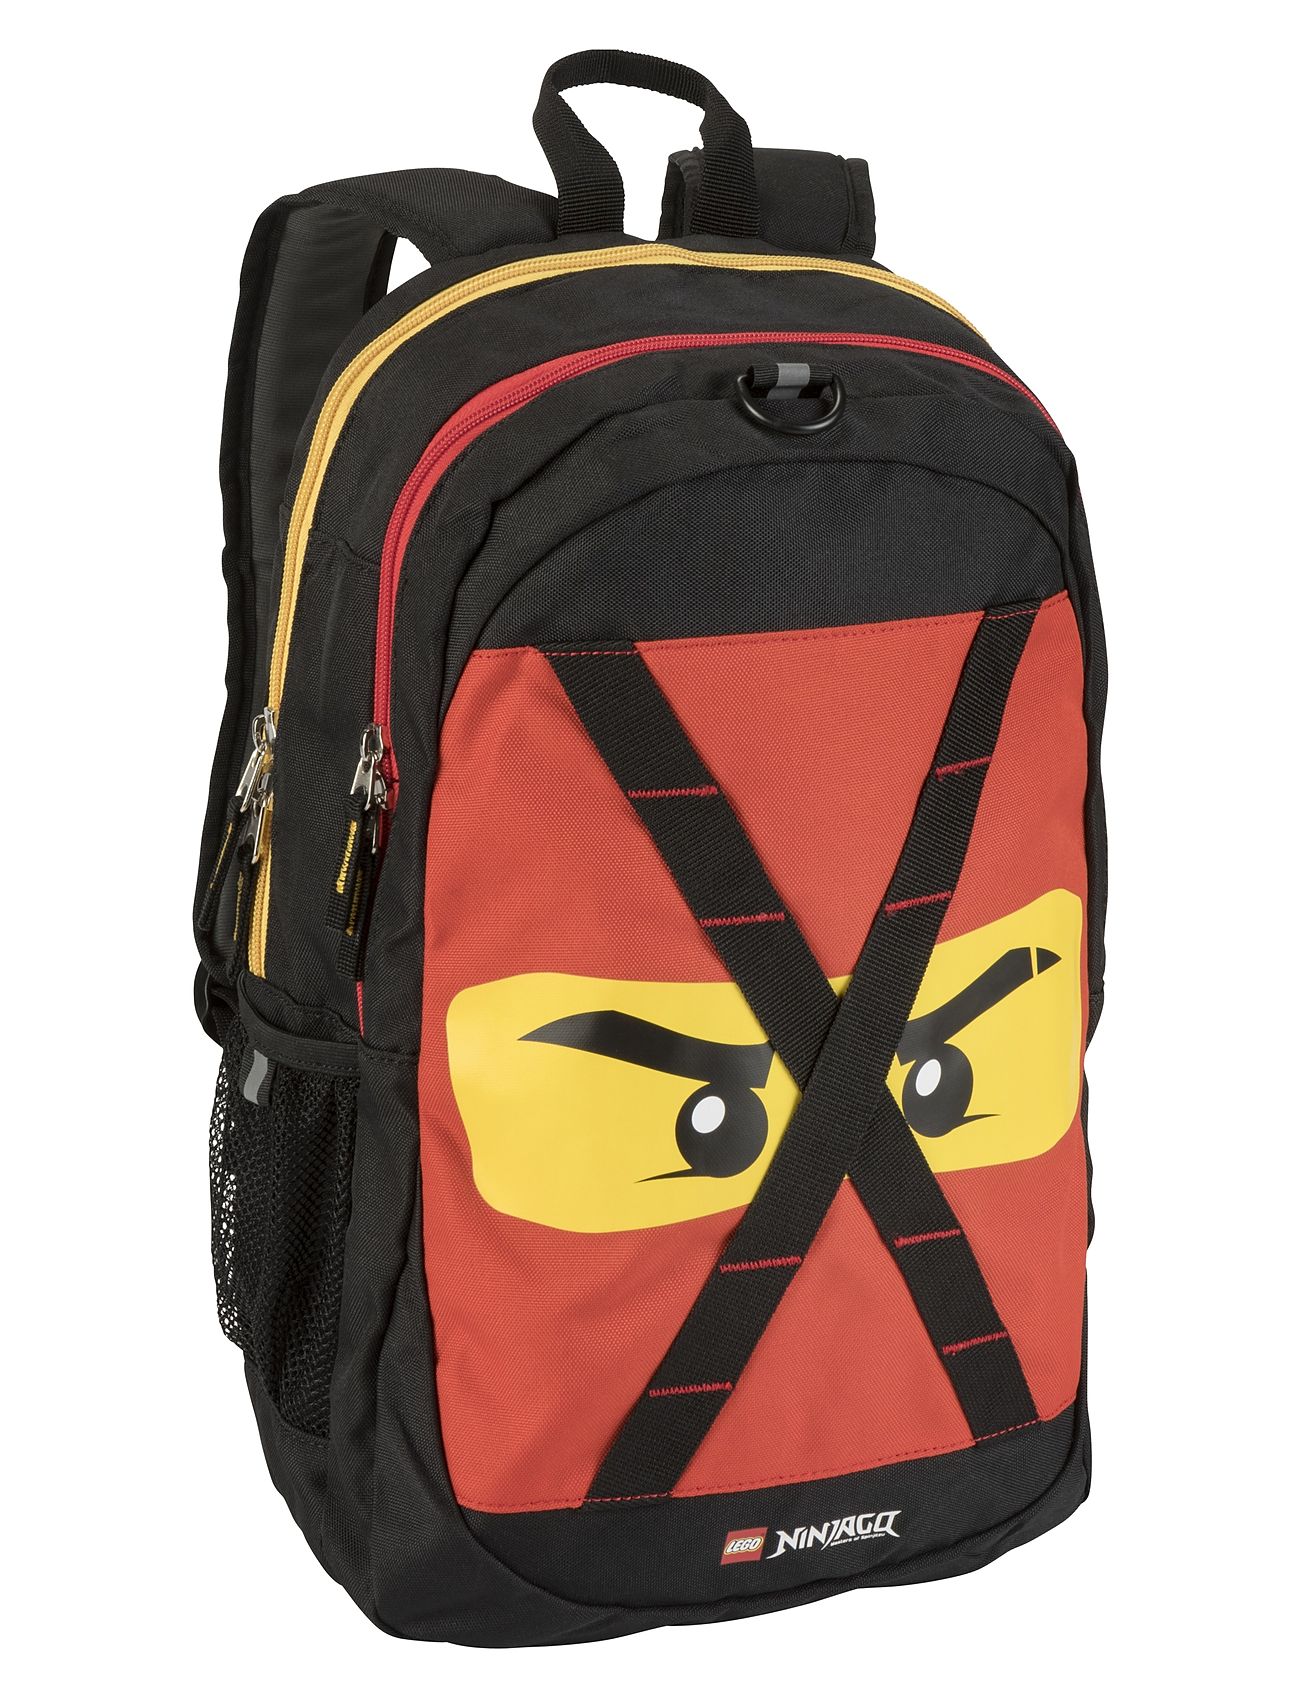 Lego Future Ninjago Backpack Ryggsäck Väska Multi/patterned Ninjago